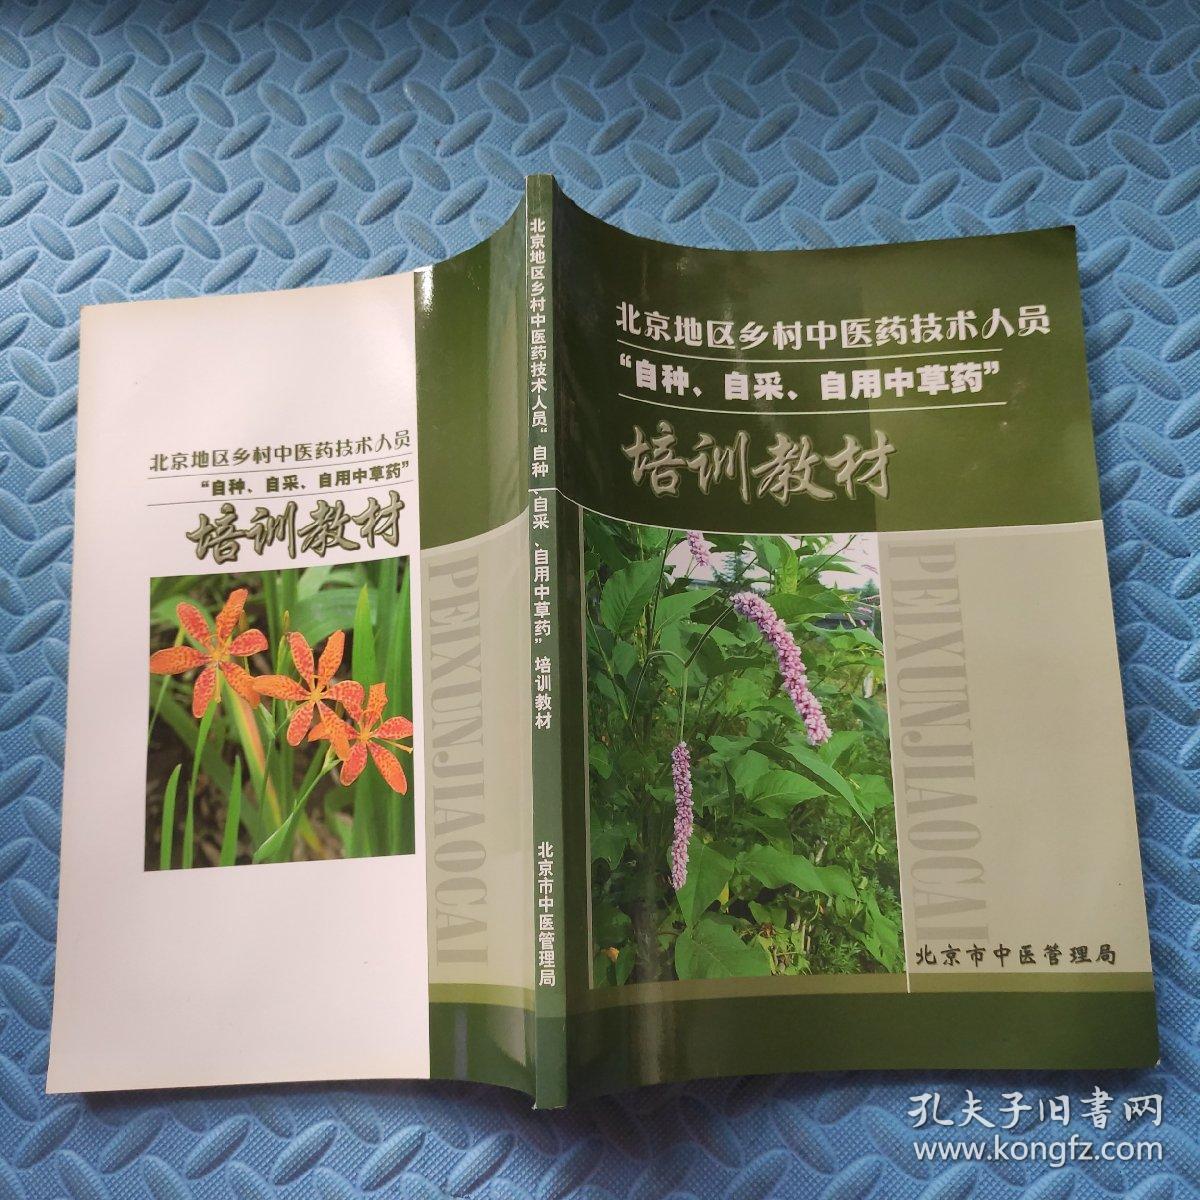 北京地区乡村中医药技术人员“自种、自采、自用中草药”培训教材